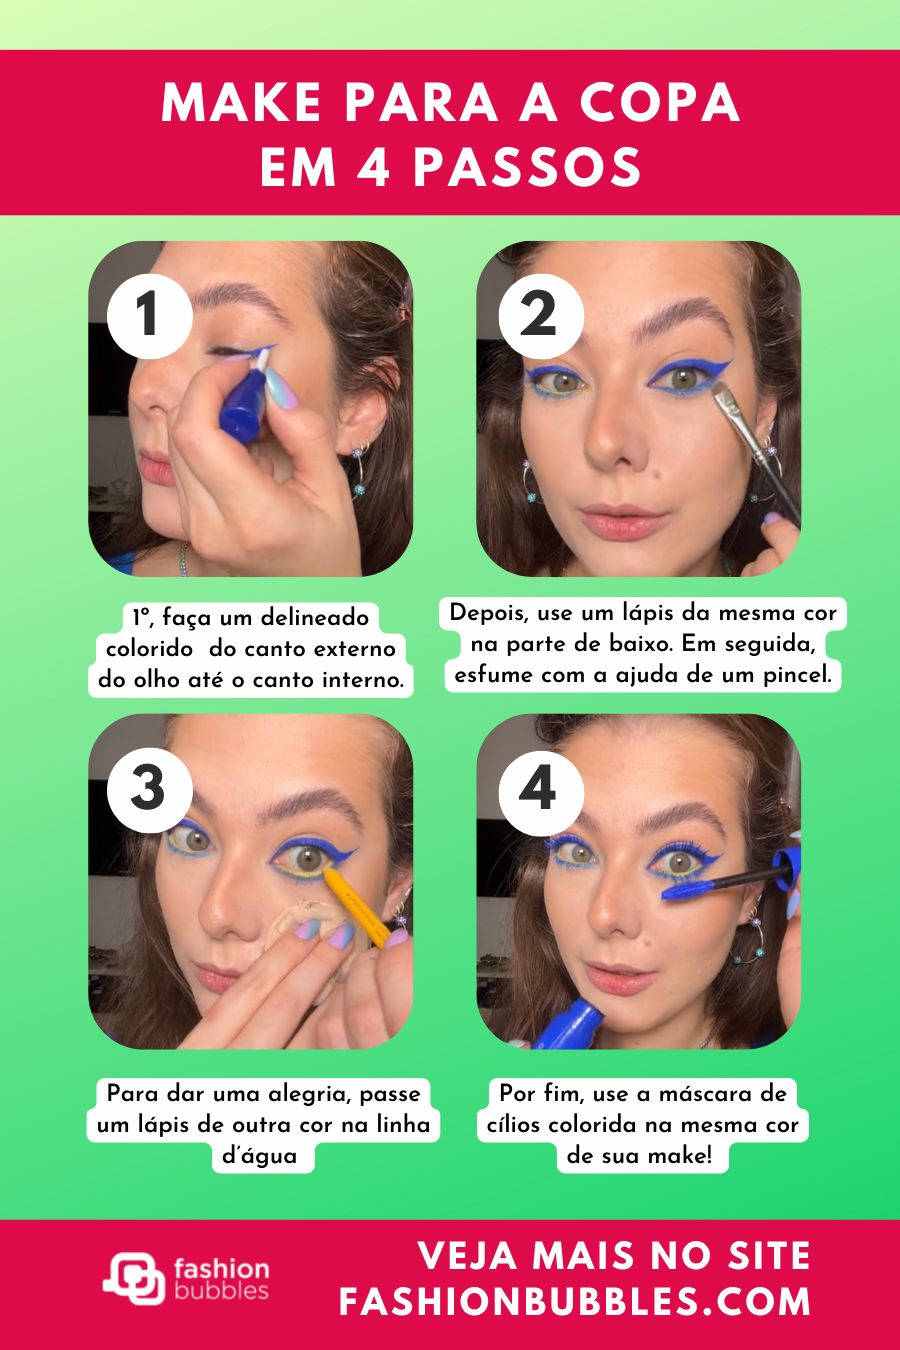 Ilustração com 4 fotos de Vicky Laraburu fazendo o passo a passo de maquiagem Brasilcore para usar na Copa do Mundo. O fundo da imagem é verde e contém traços rosas com informações sobre a make